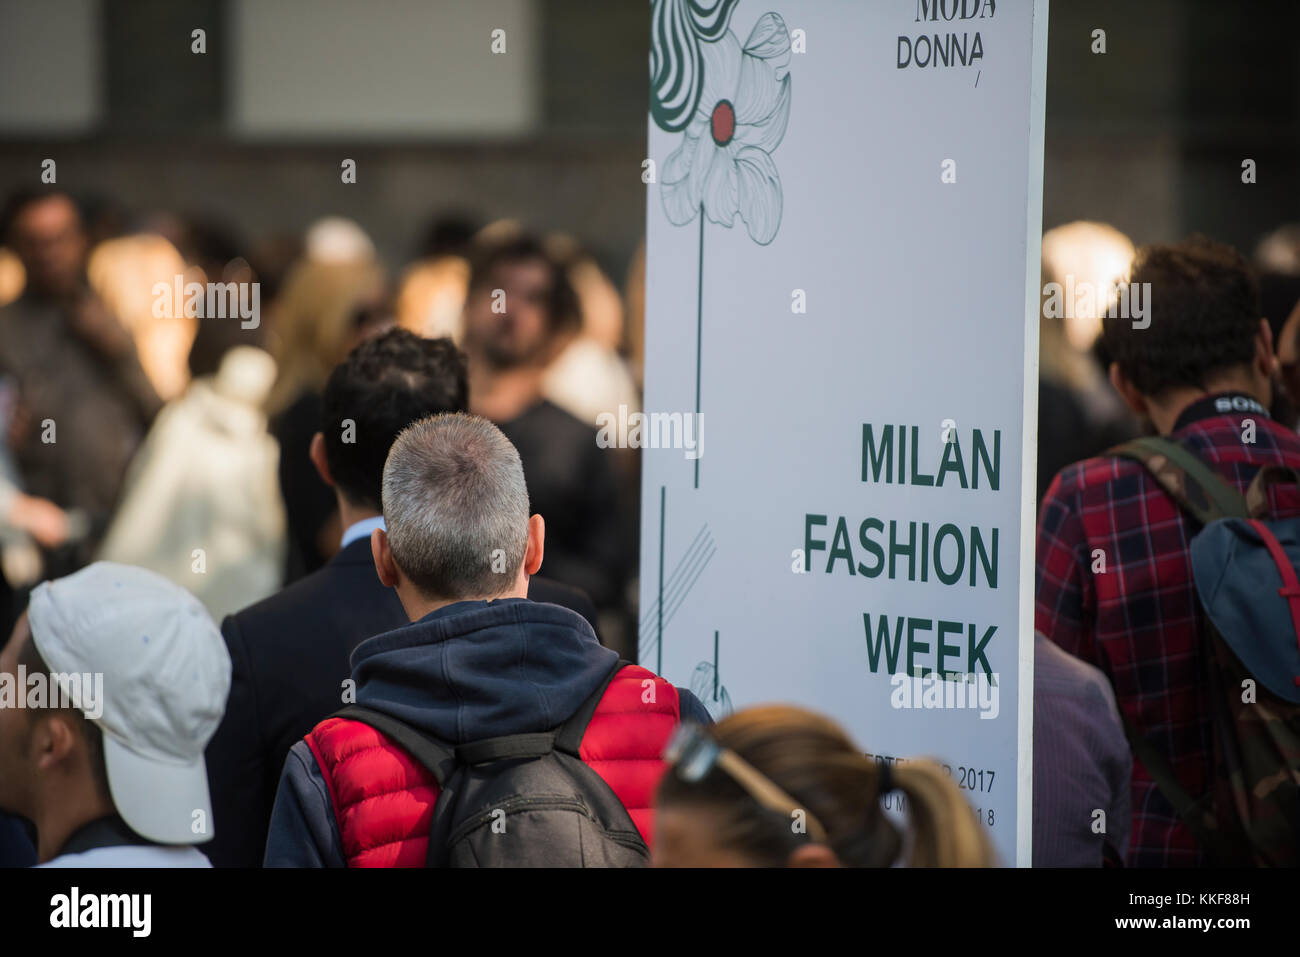 Mailand, Italien - 22 September, 2017: die Menschen am Eingang von einer Modenschau in Mailand fashion week. Stockfoto